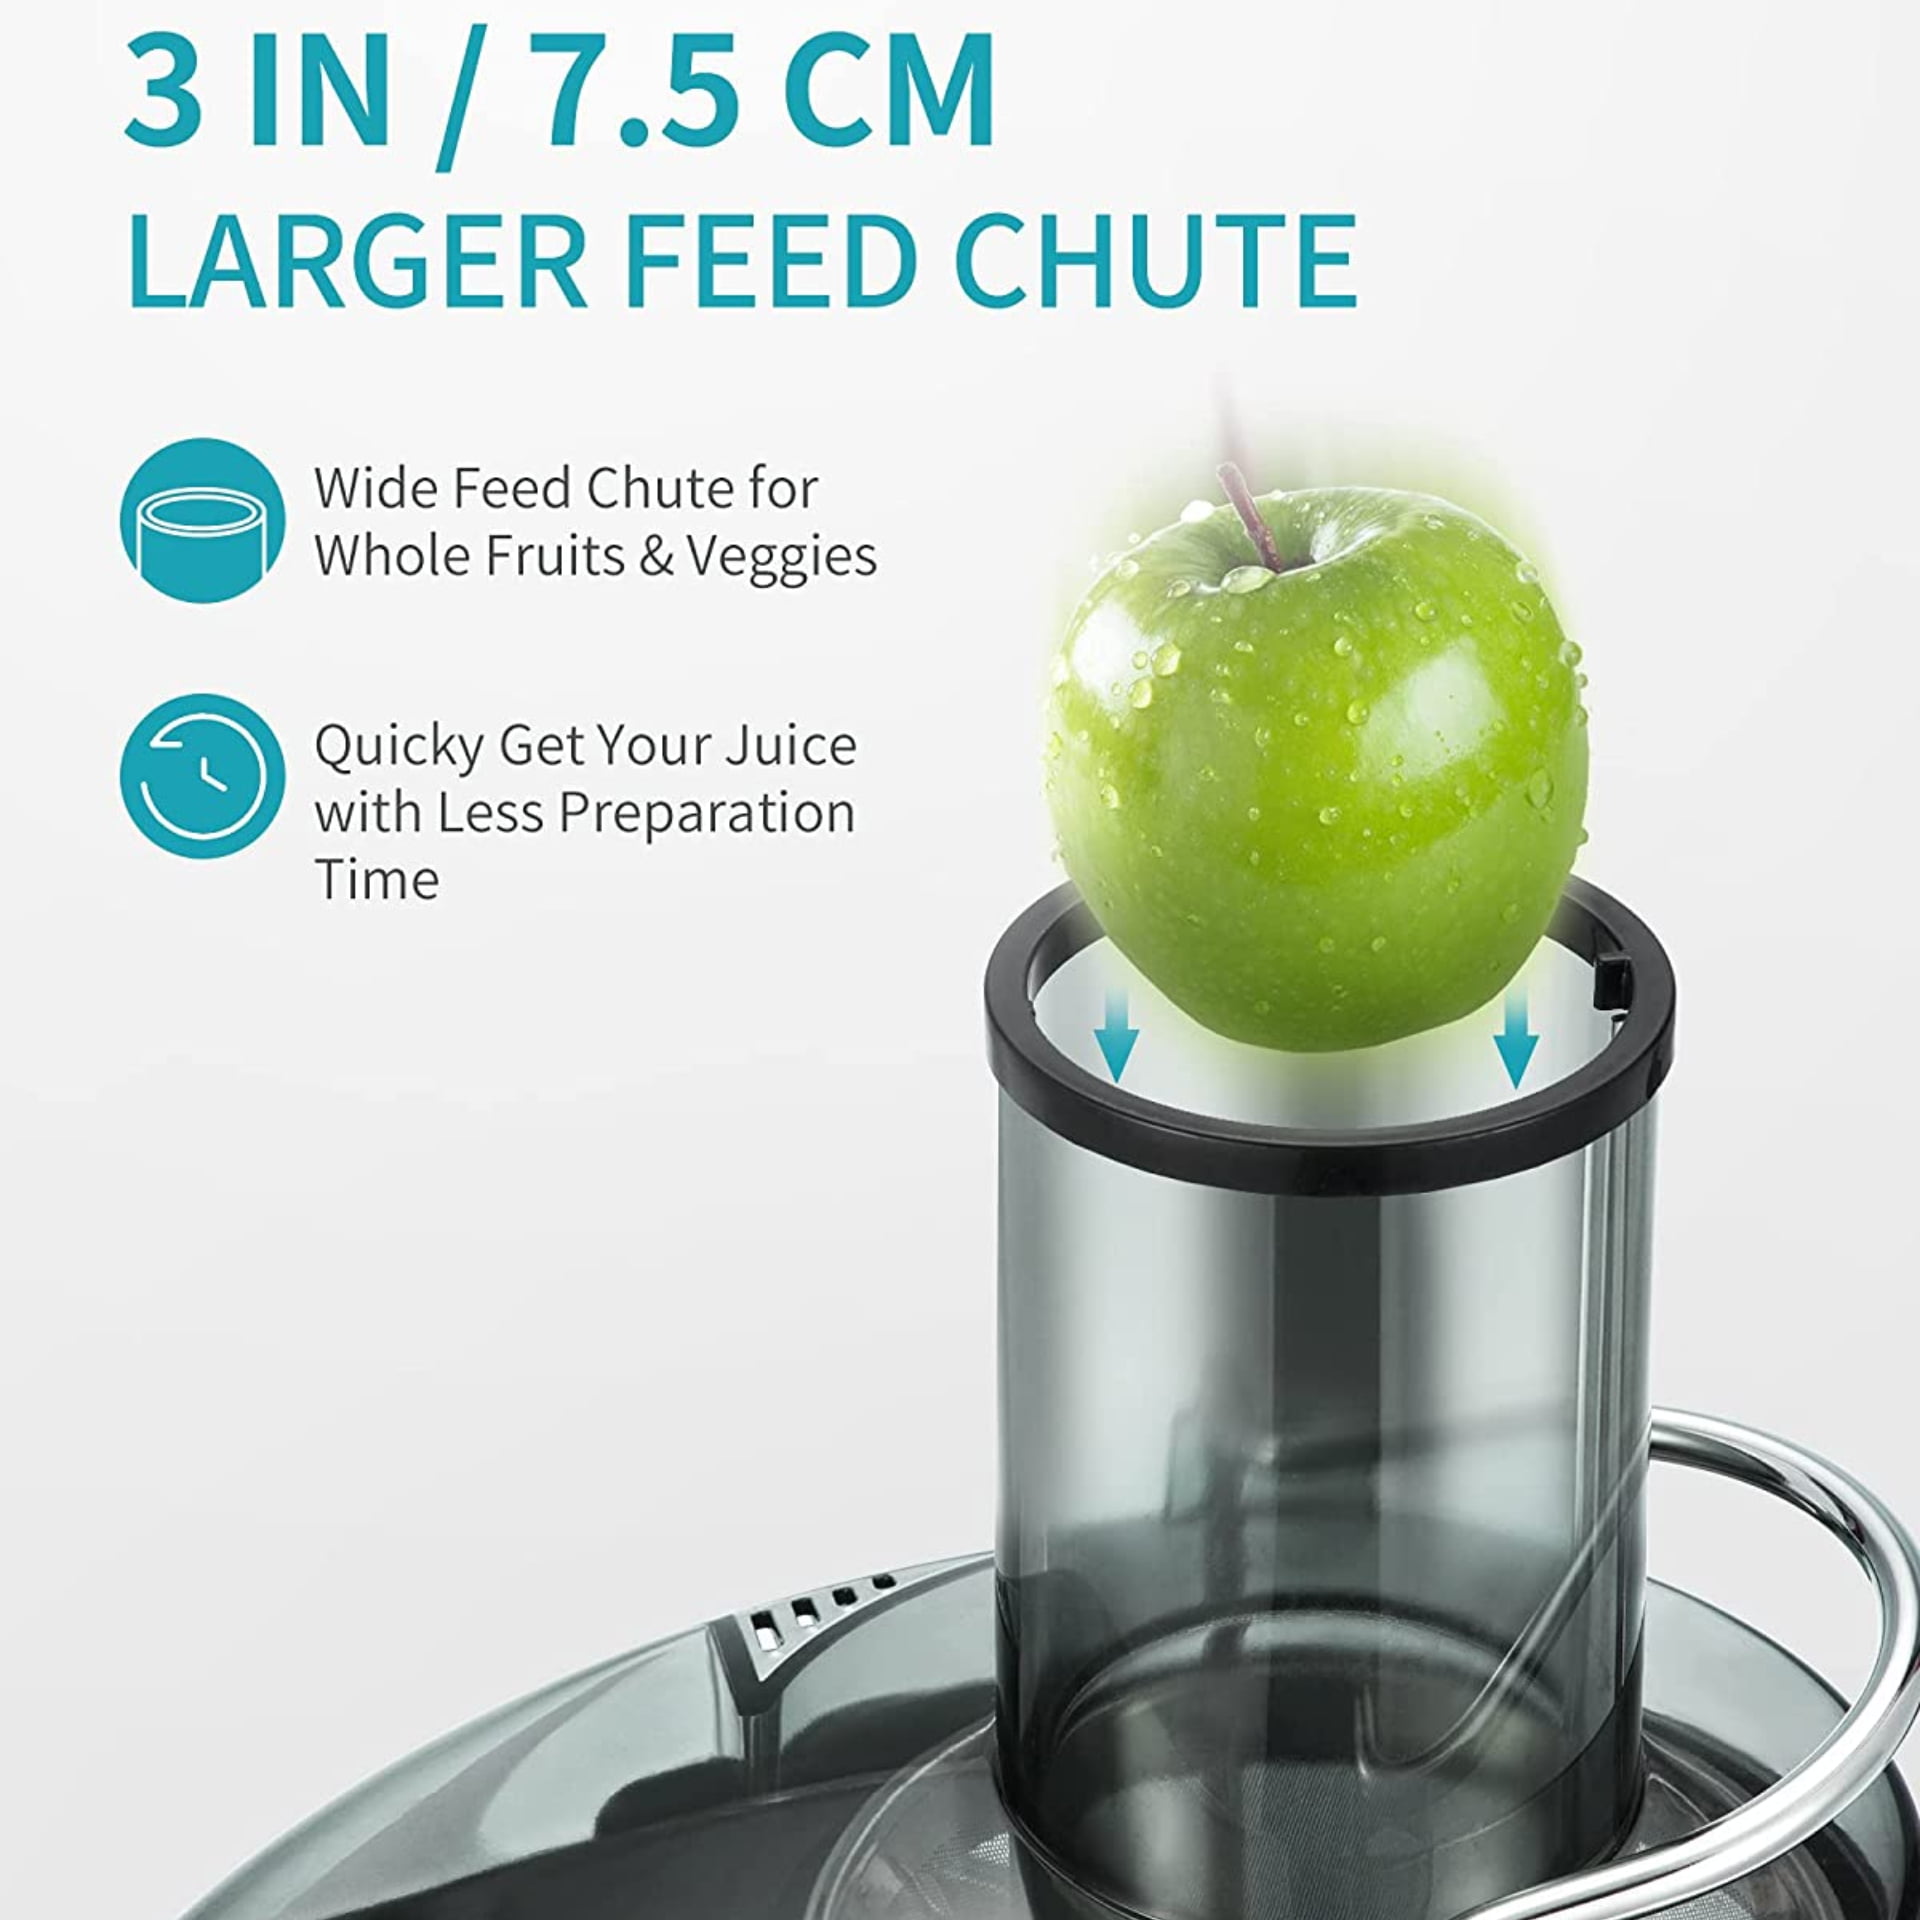 Presse-agrumes centrifuge extra large à 2 vitesses pour fruits et légumes, facile à nettoyer